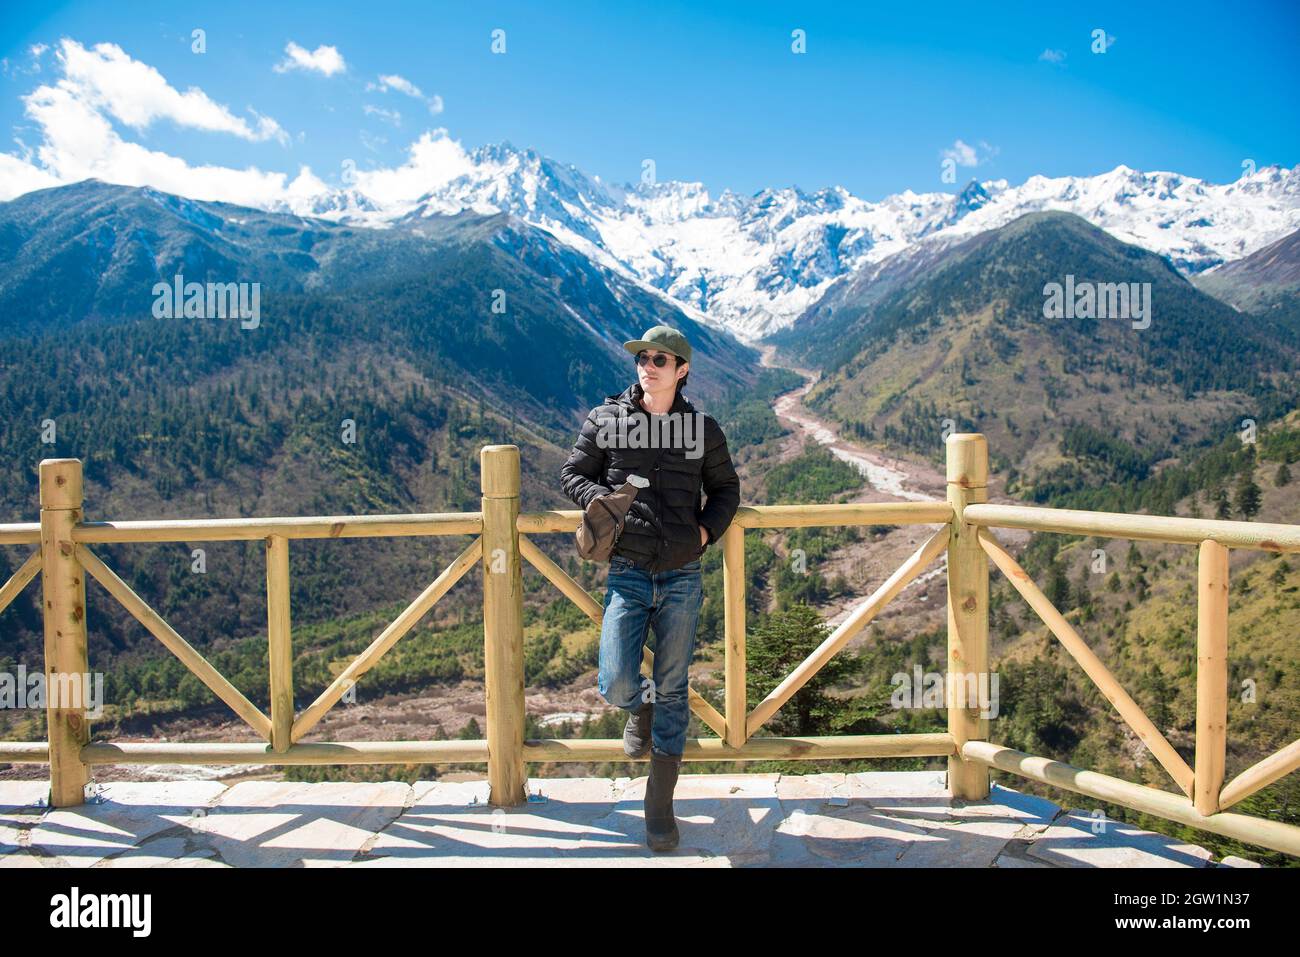 Beau homme debout au point d'observation contre les montagnes en hiver Banque D'Images